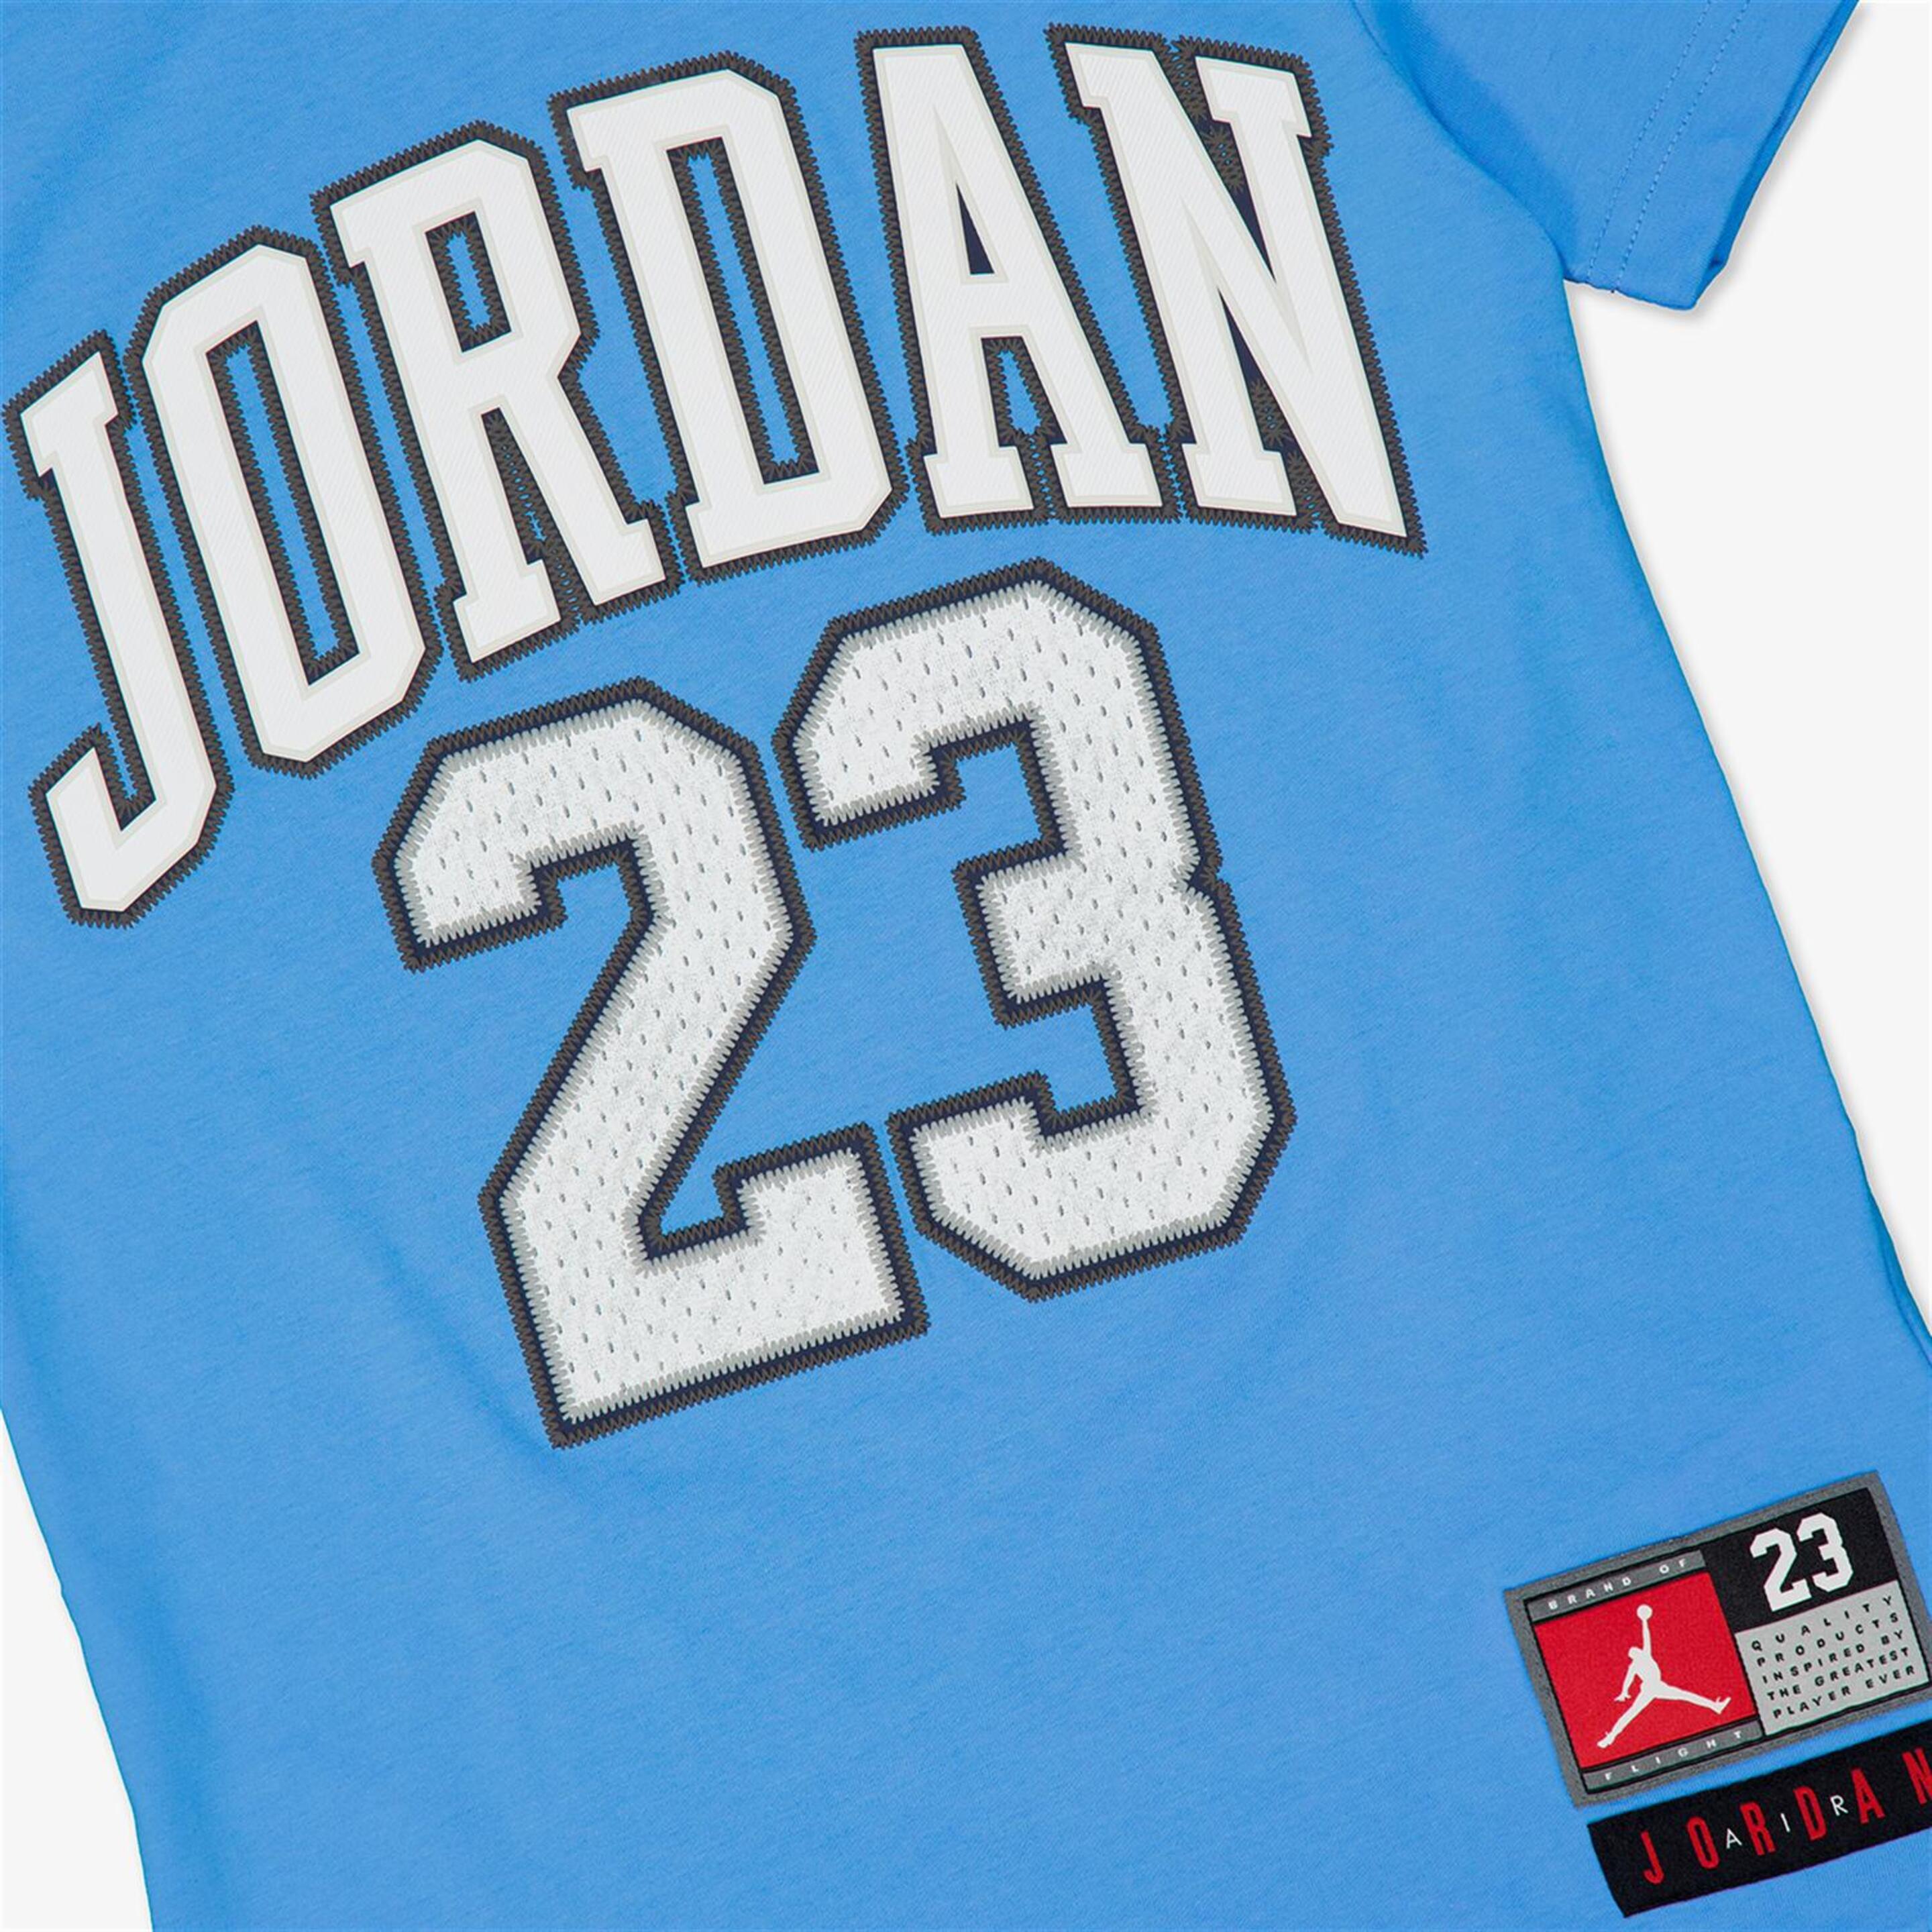 Camiseta Jordan - Azul - Camiseta Niño